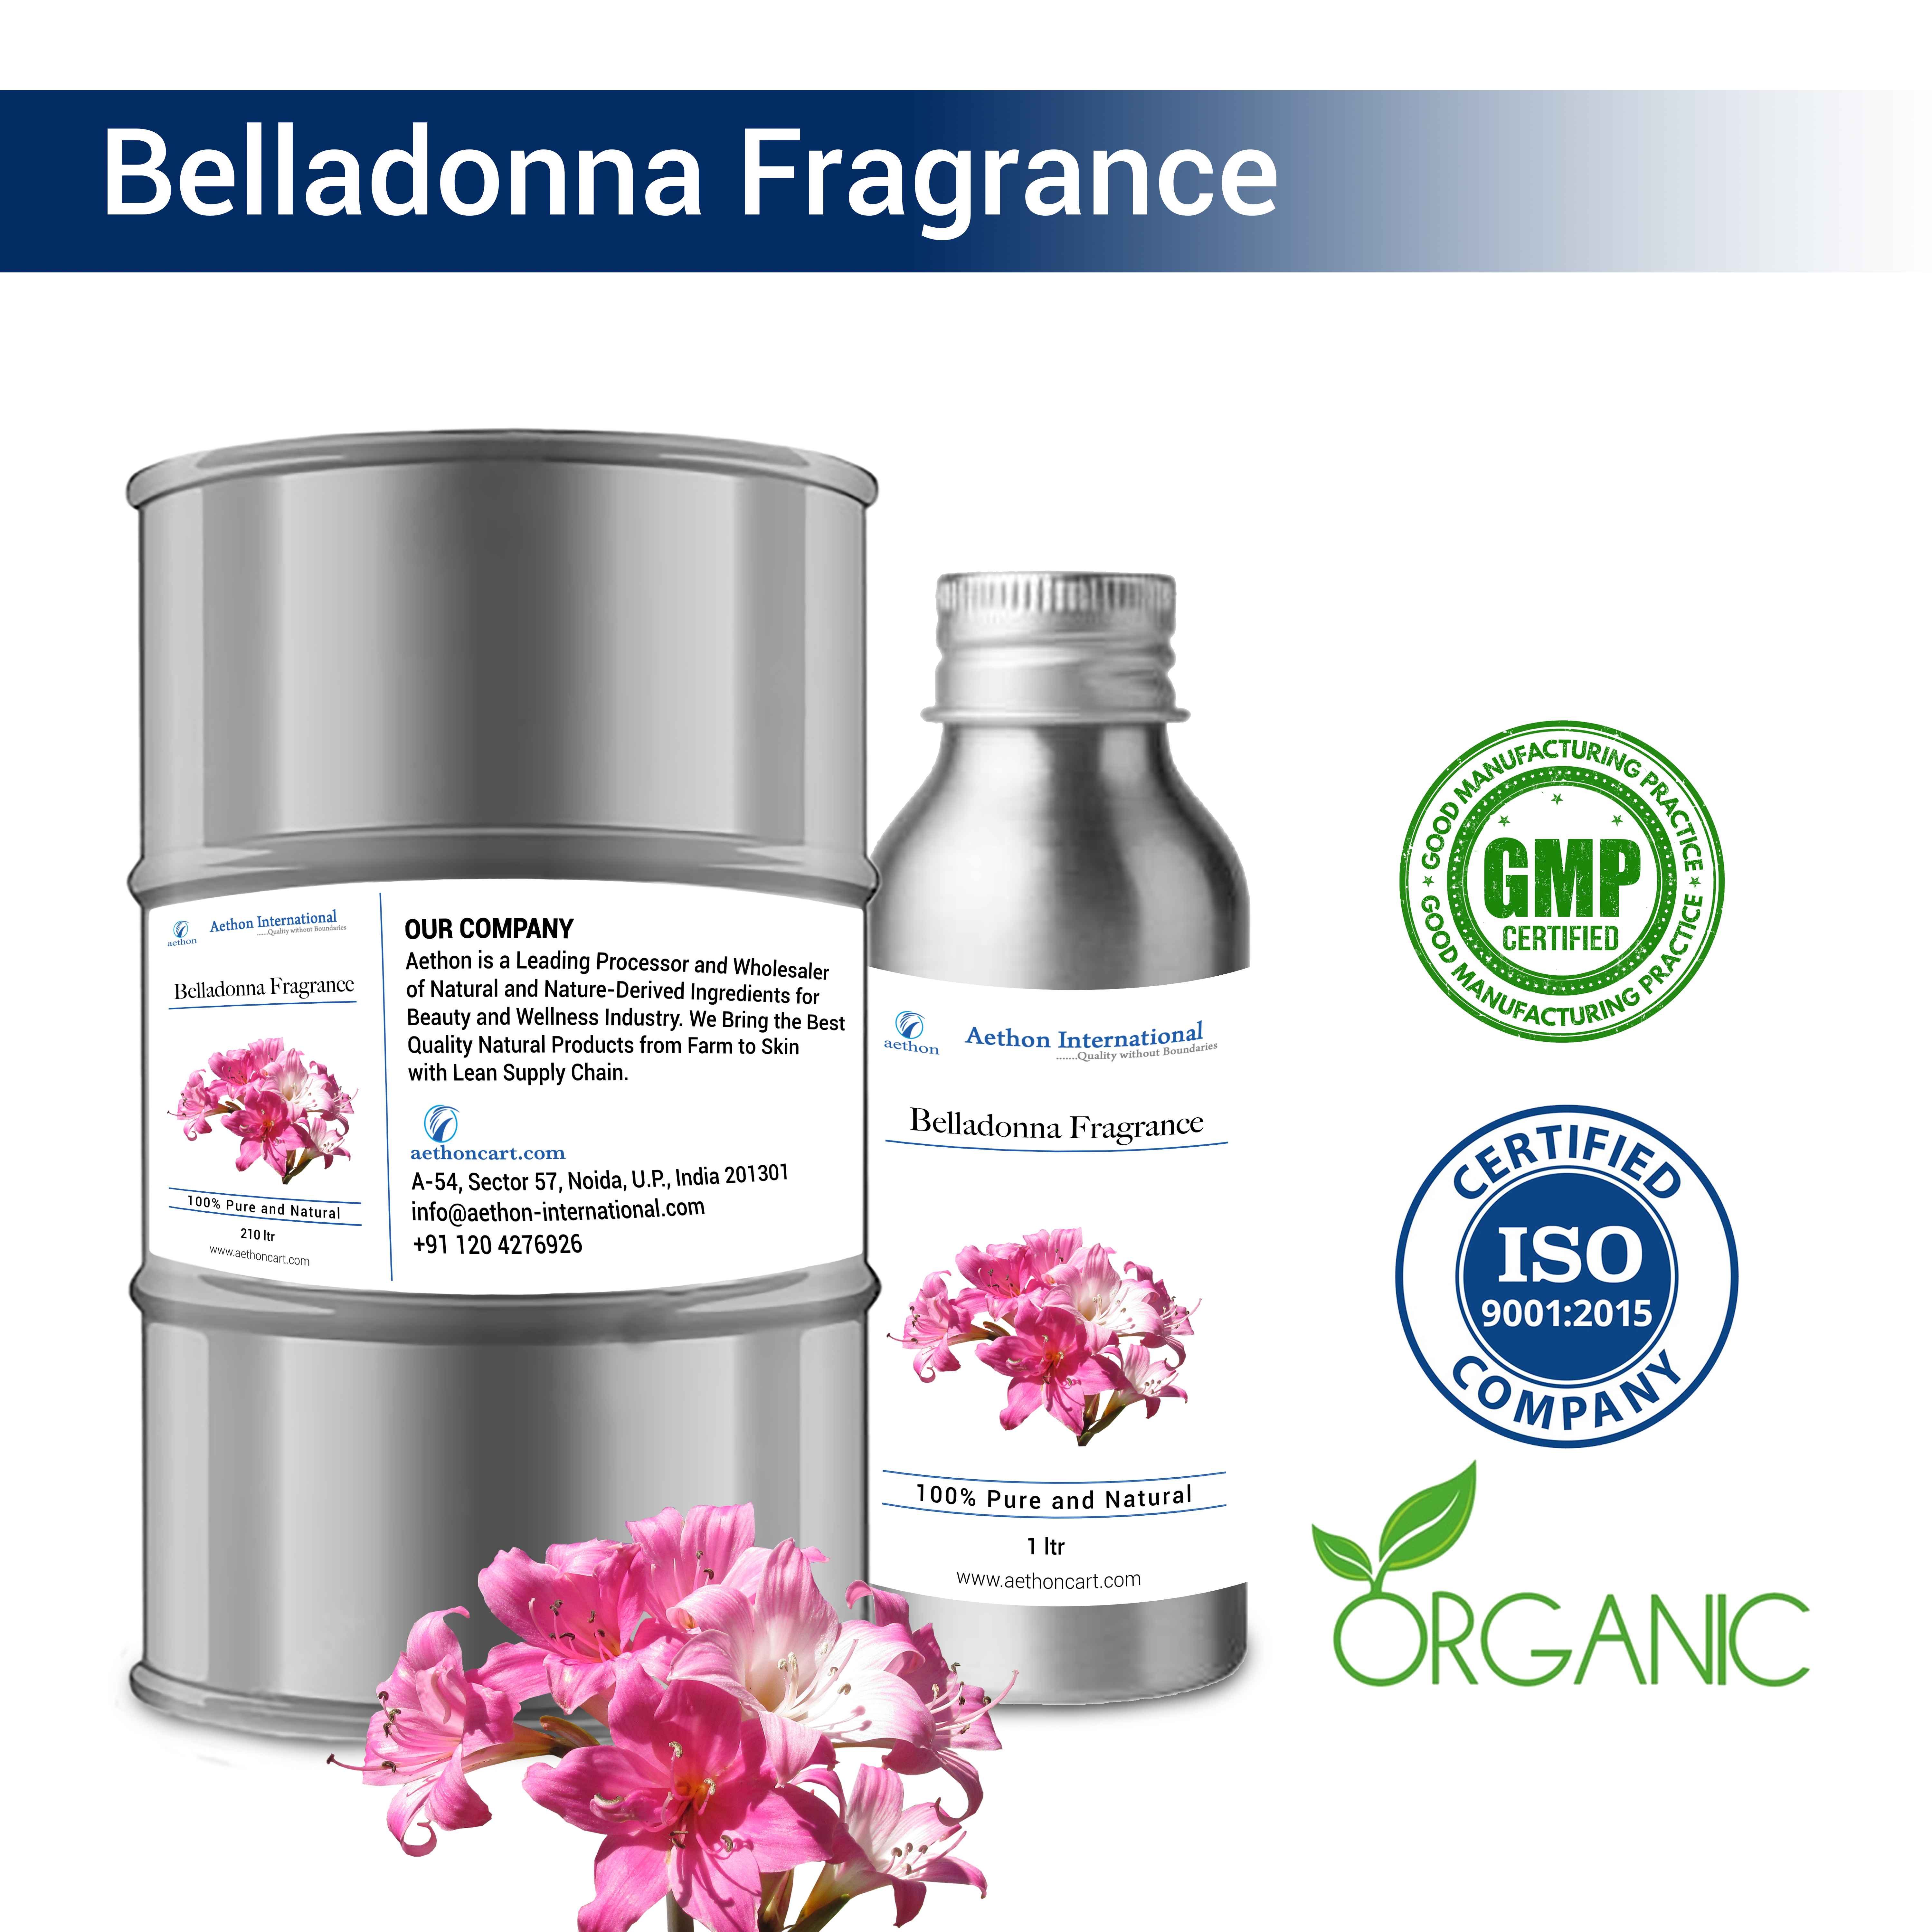 Belladonna Fragrance